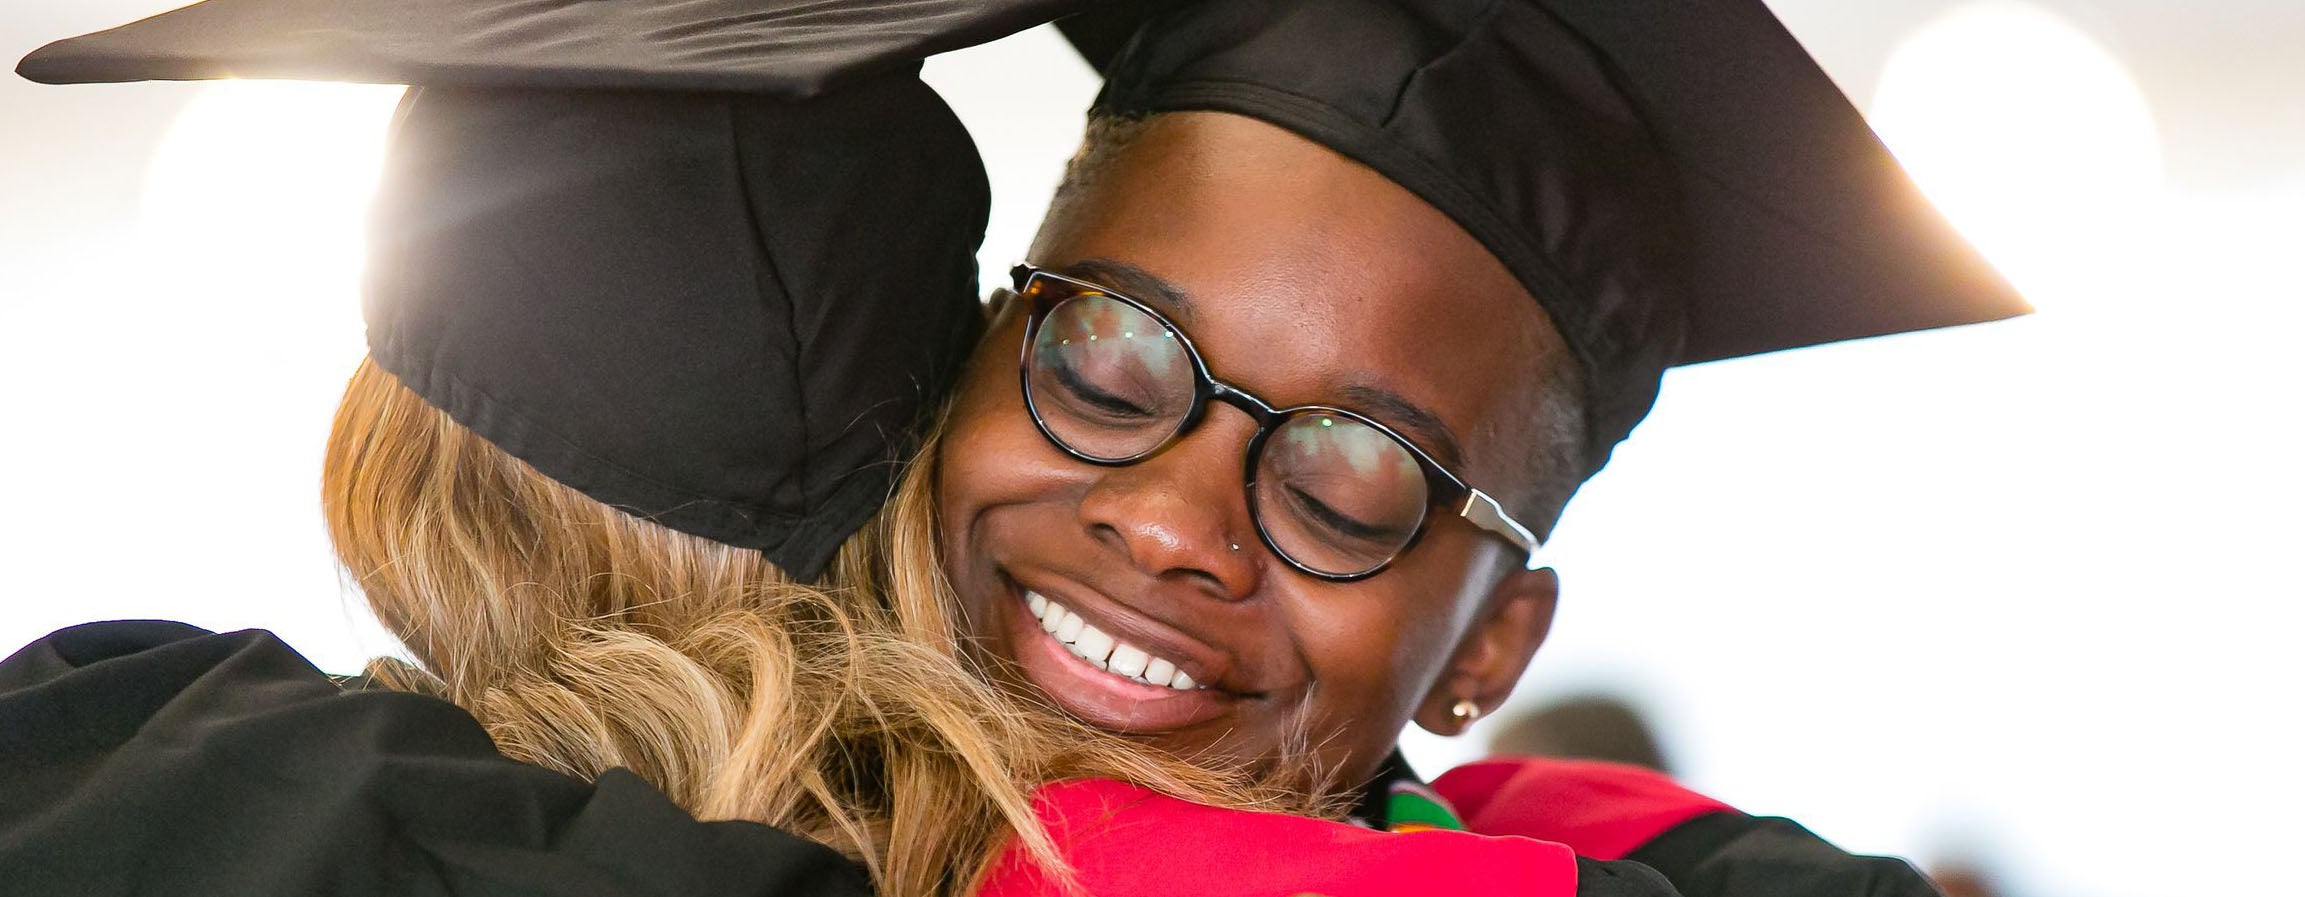 Smiling graduate embraces a fellow classmate